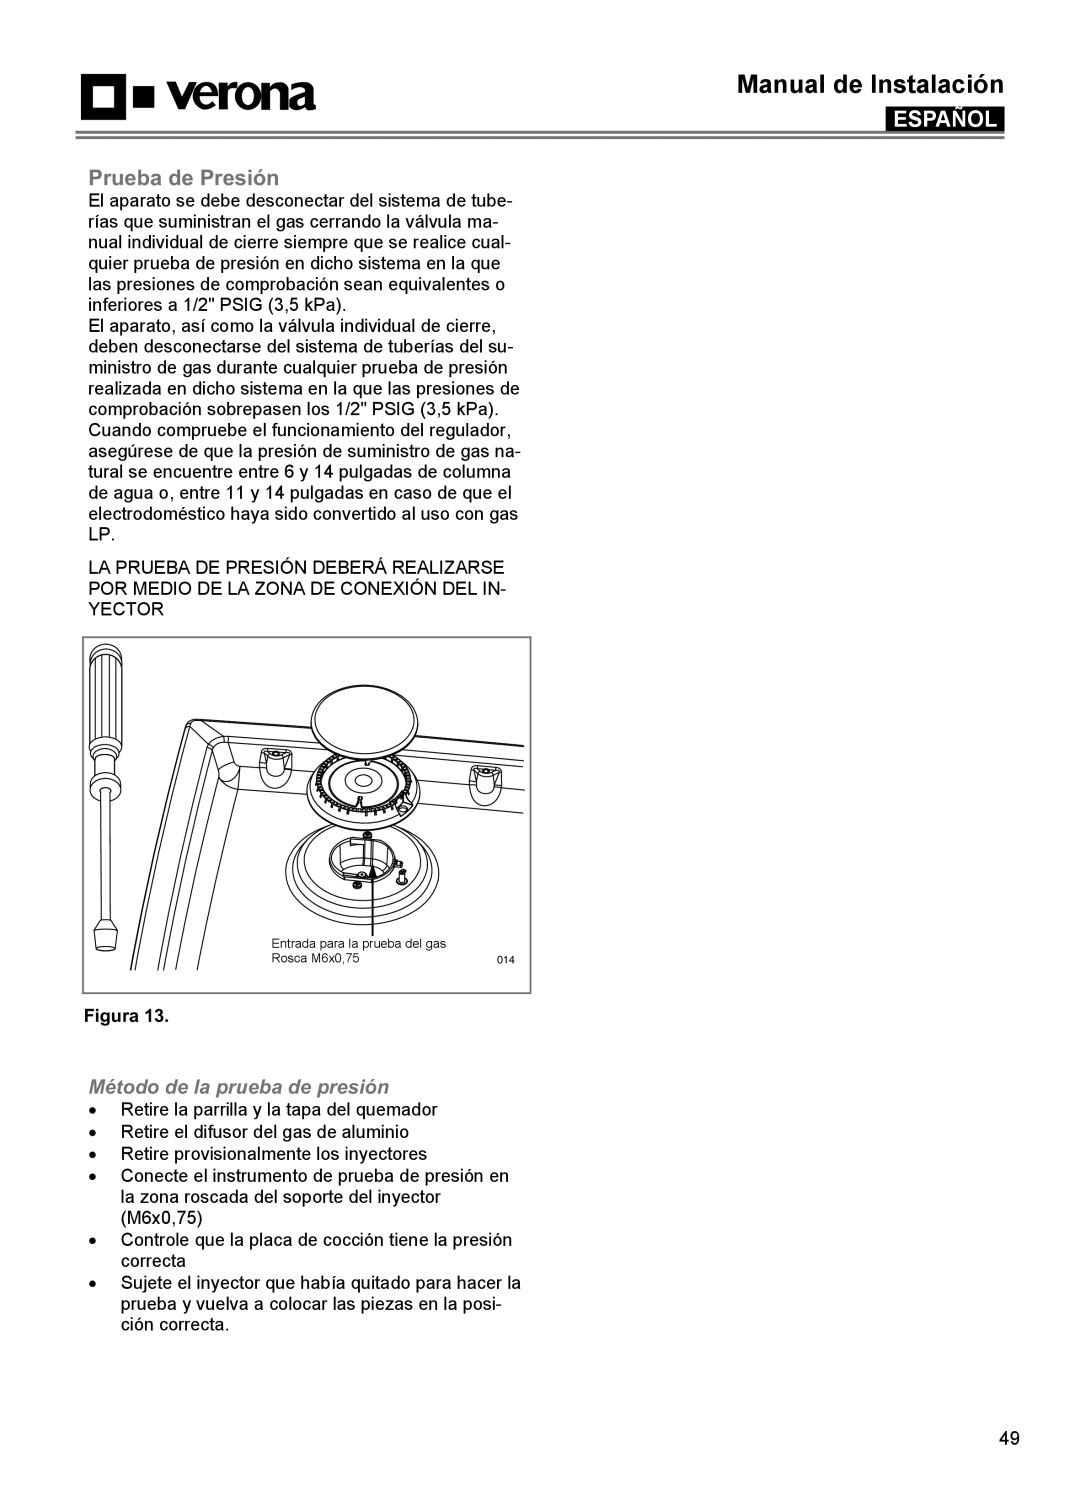 Verona VECTGMS304SS manual Prueba de Presión, Método de la prueba de presión, Manual de Instalación, Español, Figura 